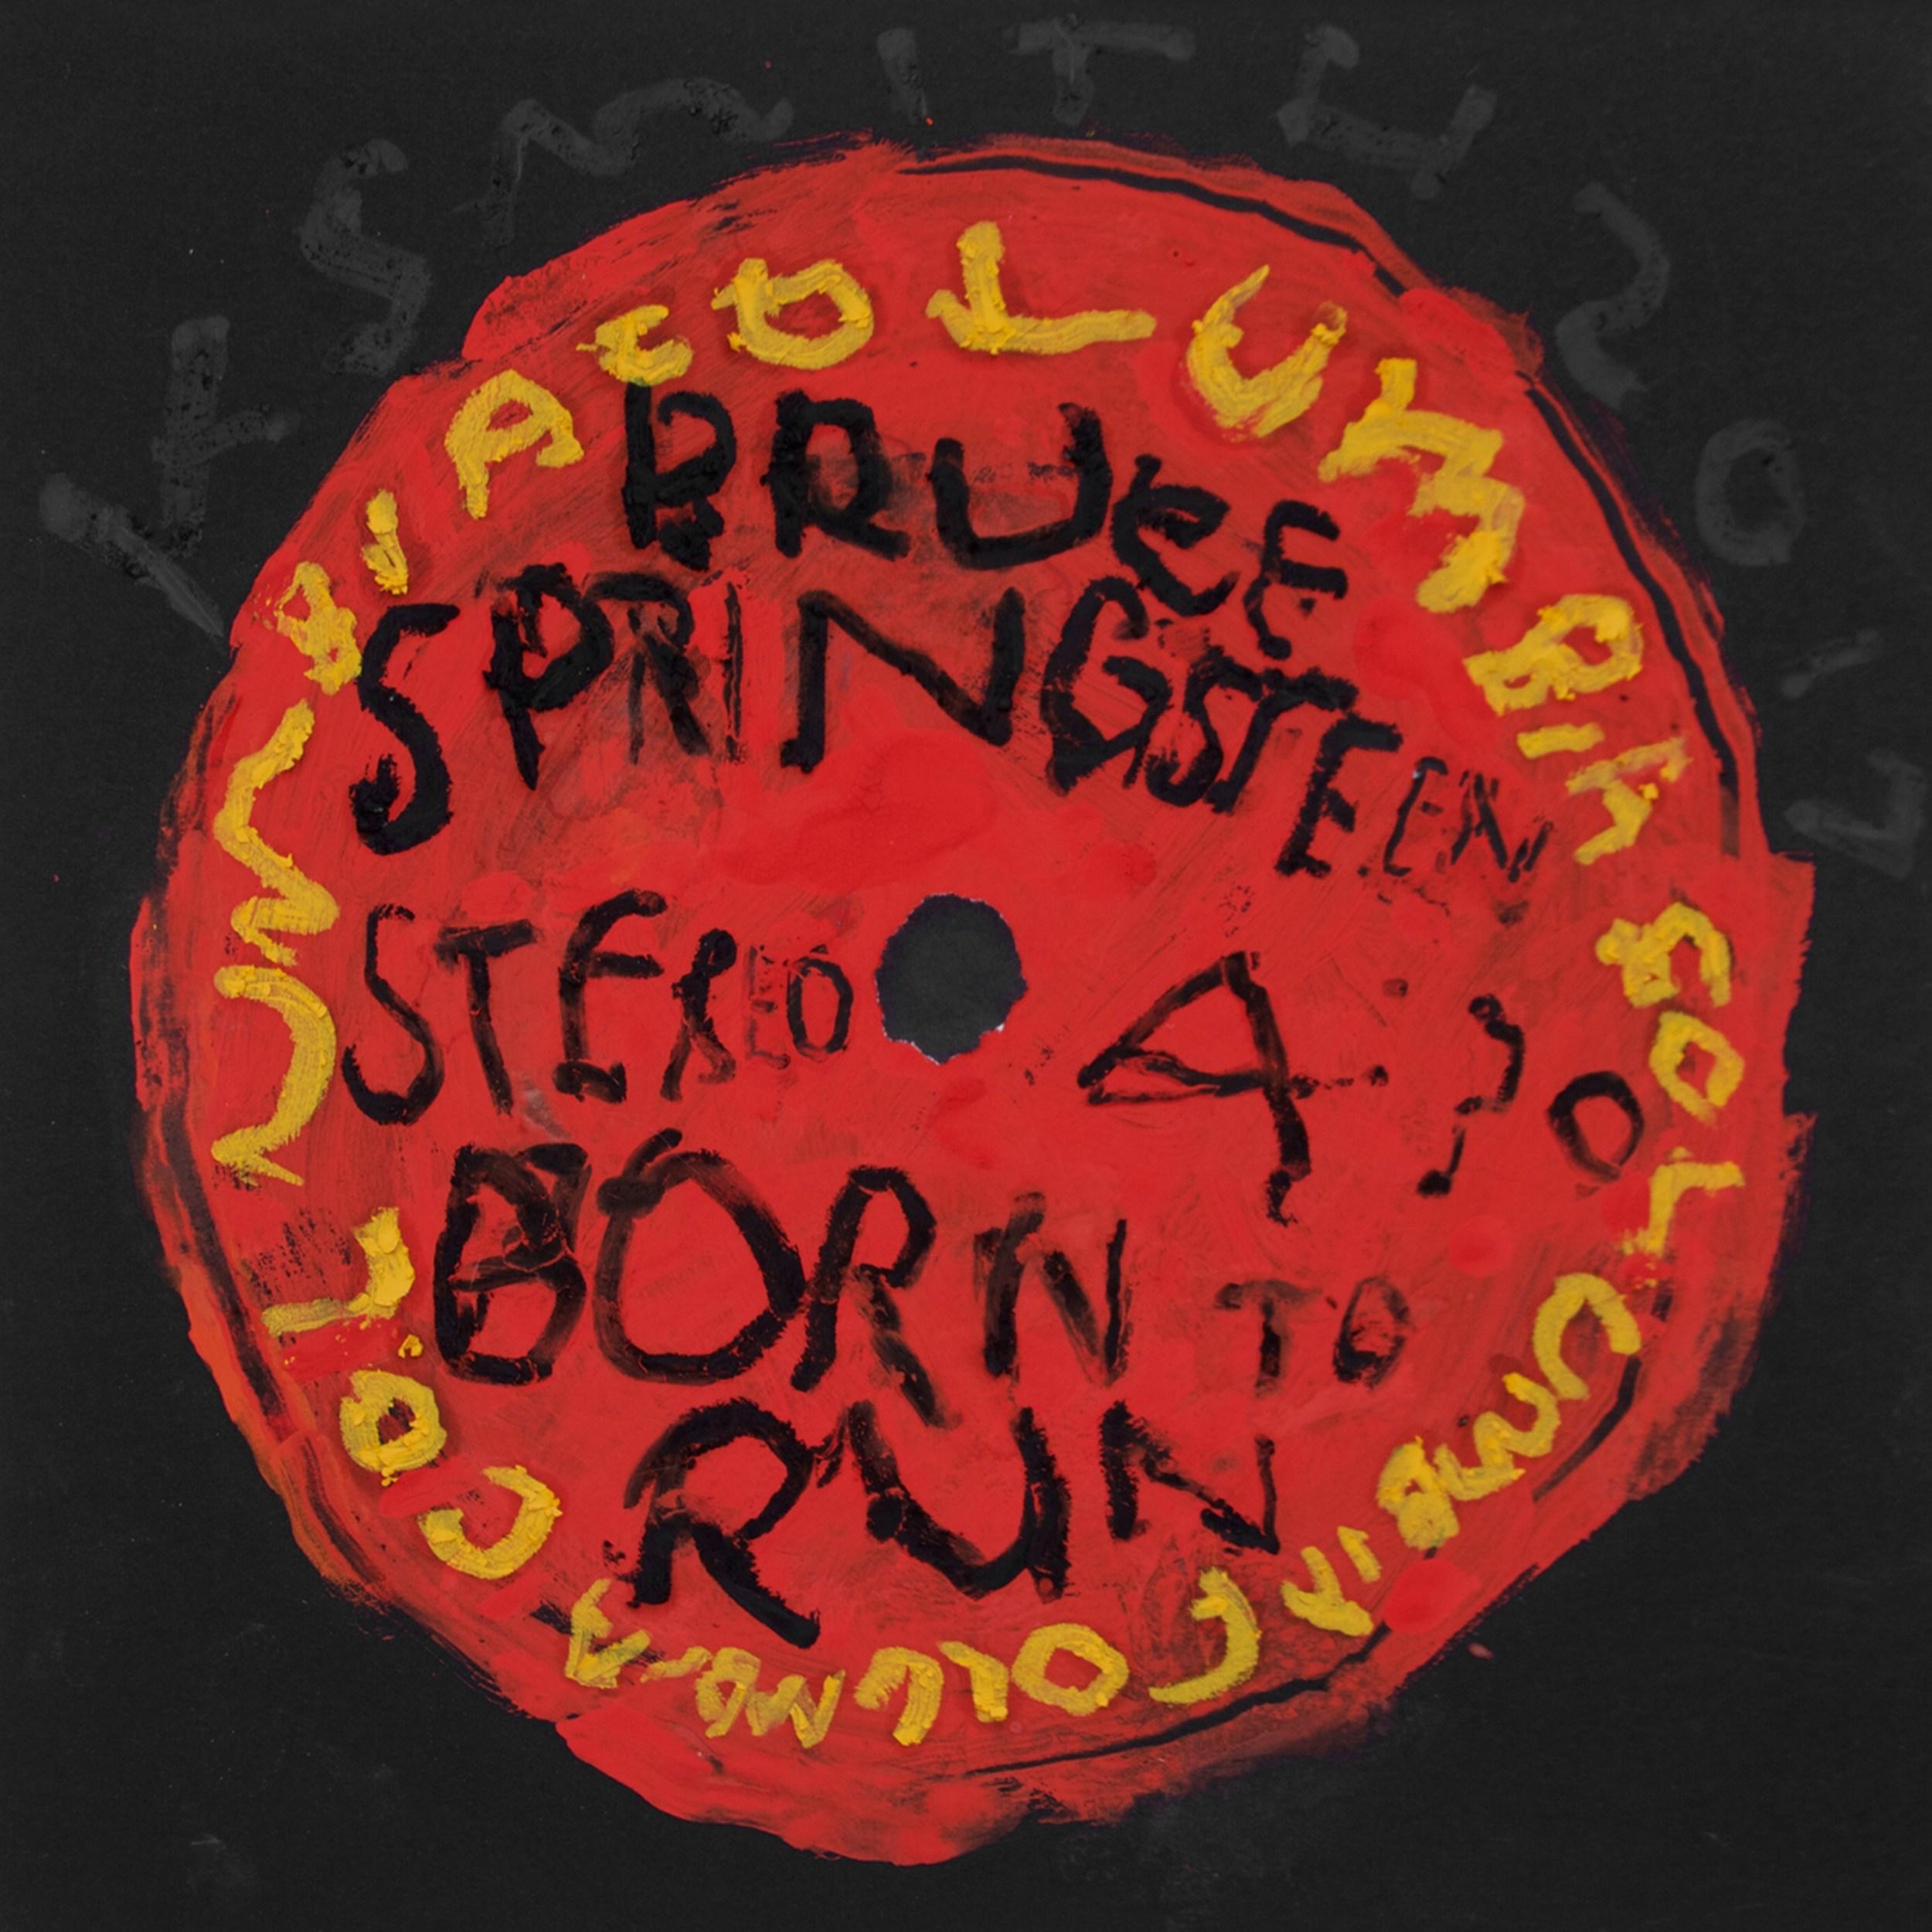 Bruce Springsteen - Born To Run (étiquette d'enregistrement, clous de disque, listes de tournage, Pop Art)